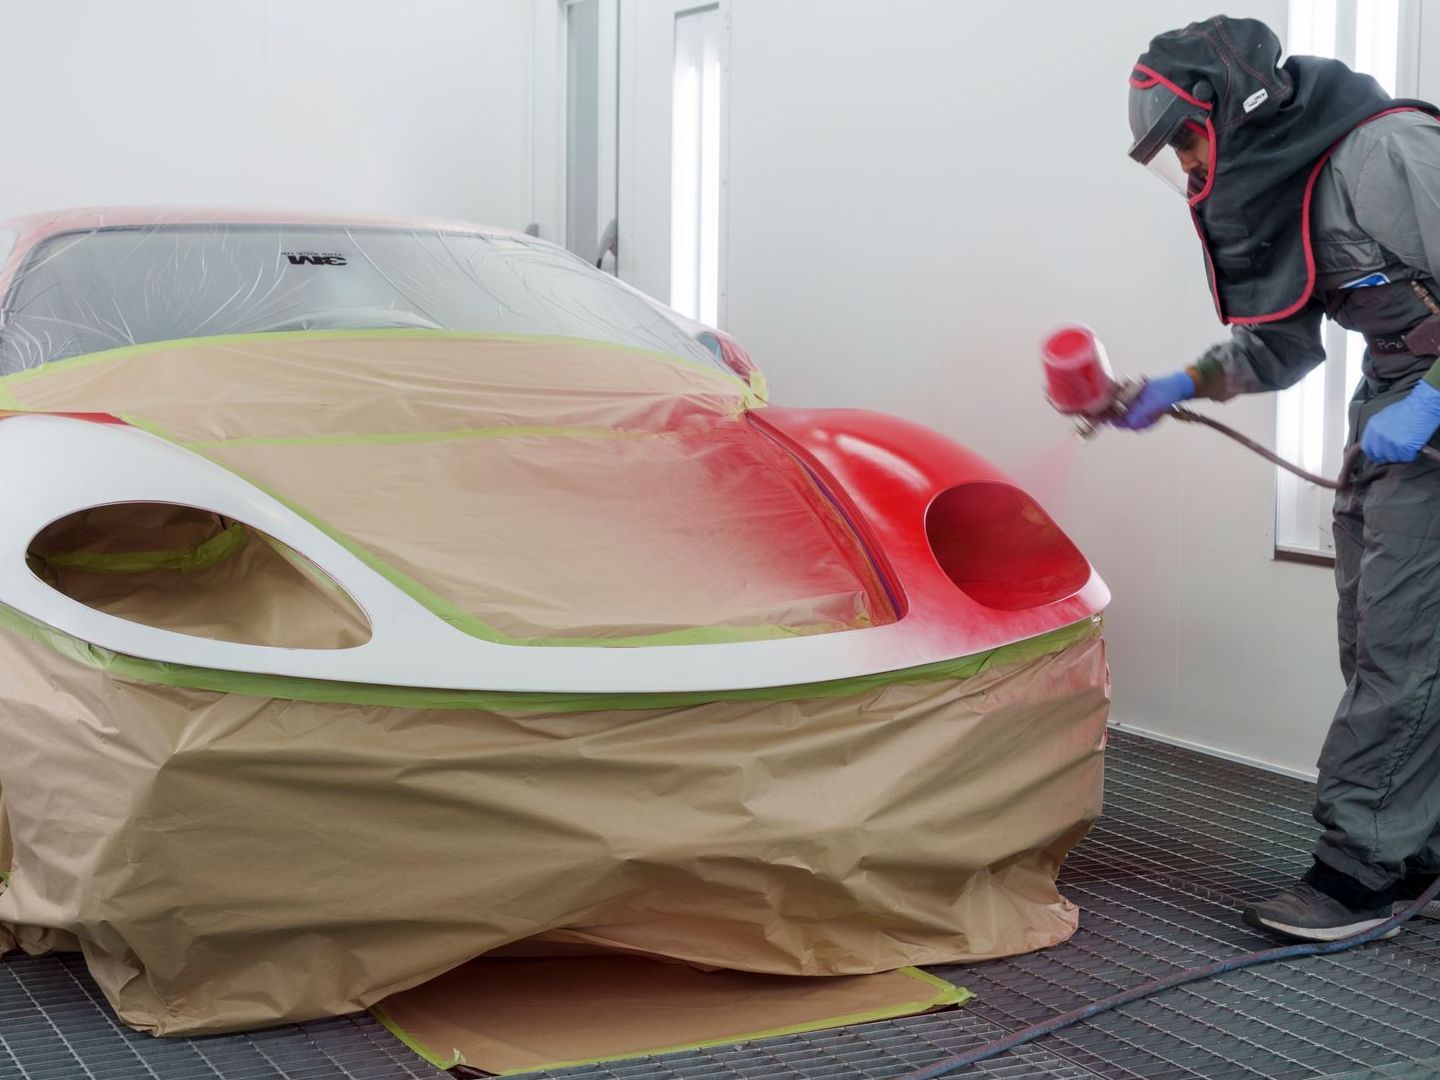 Ferrari Carbon Fibre kit